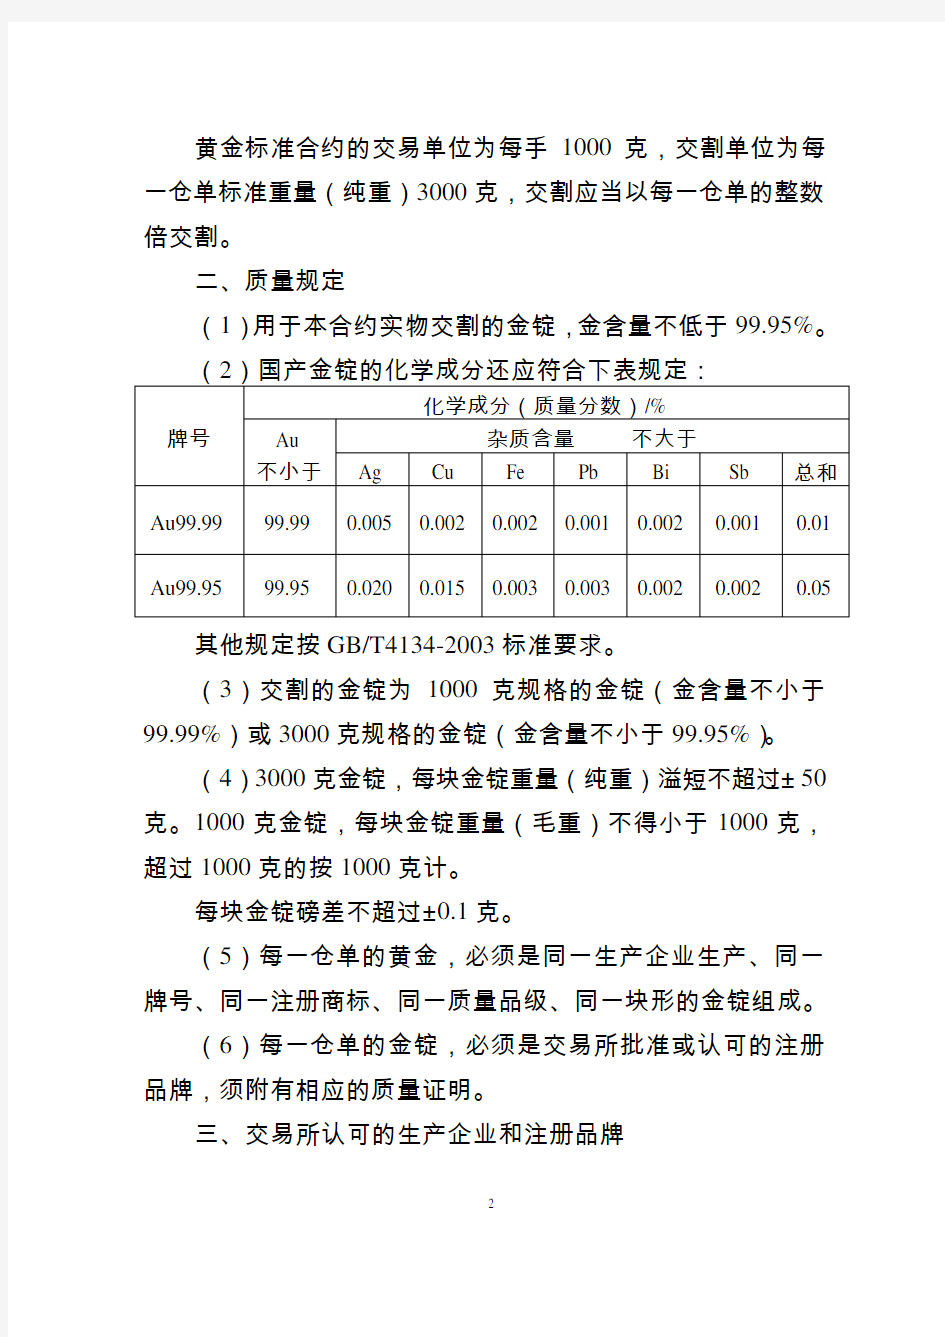 上海期货交易所黄金期货标准合约及规则